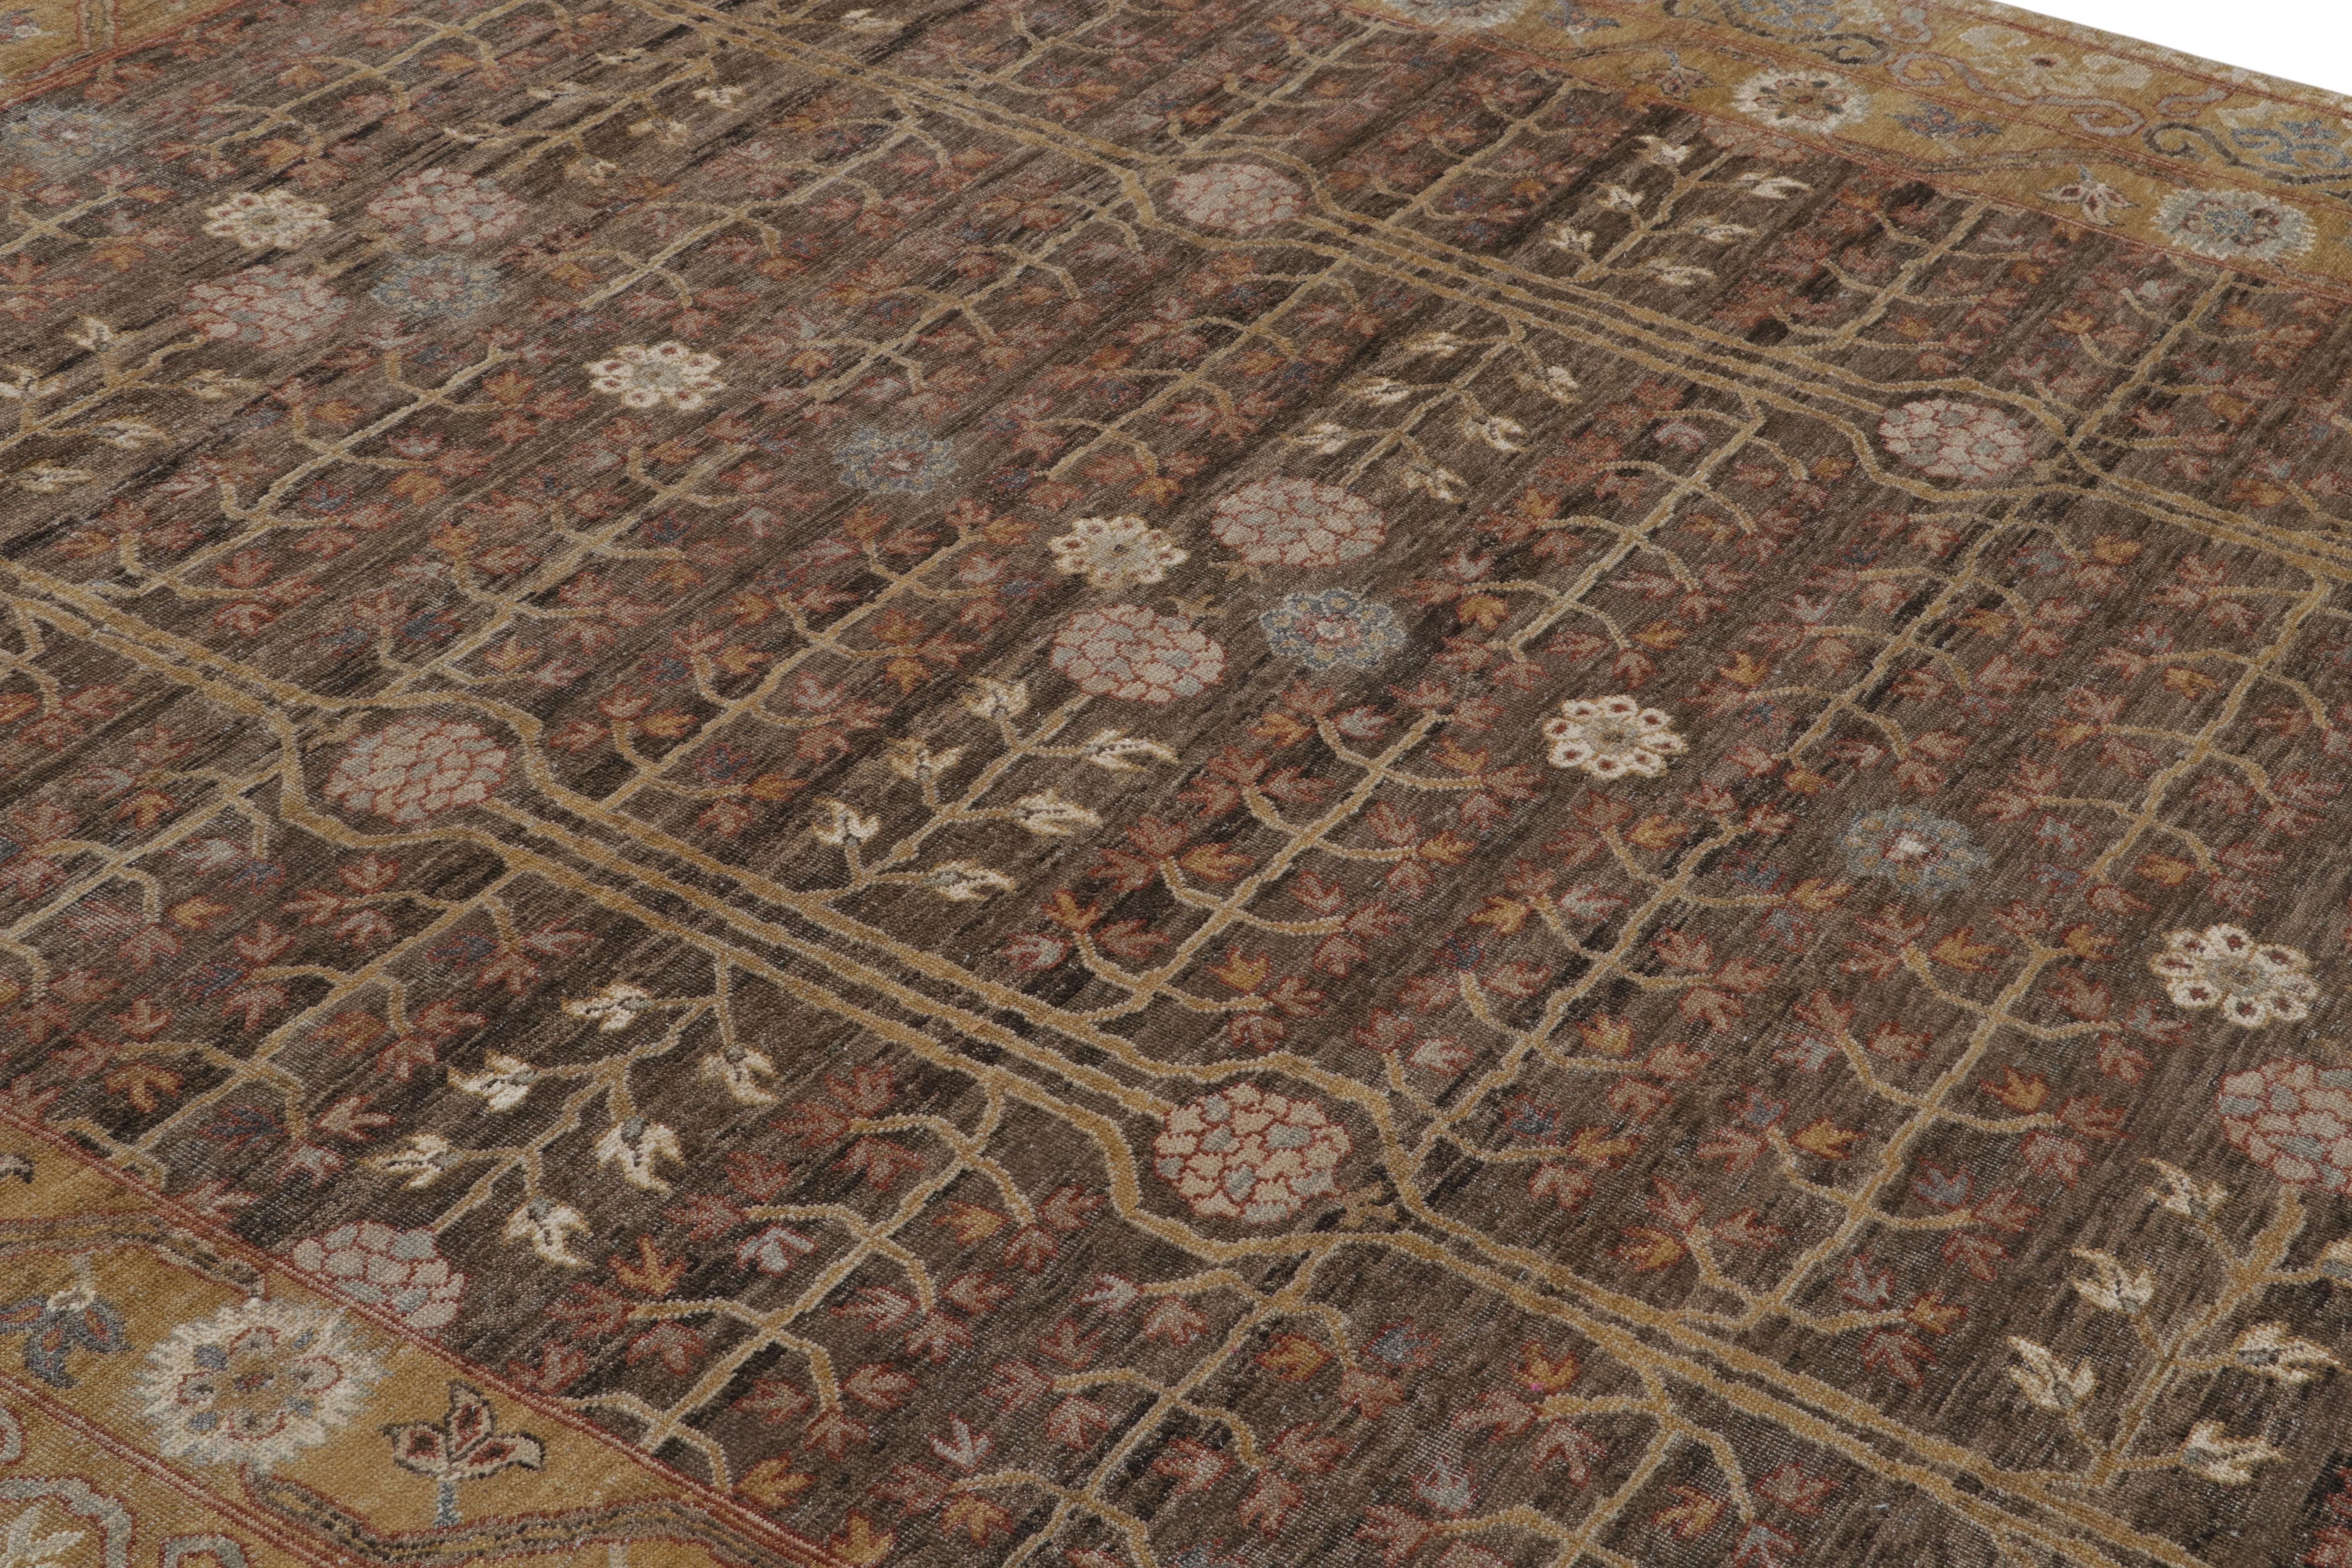 Noué à la main en laine, ce nouveau tapis 8x10 de la Collection Modern Classics de Rug & Kilim s'inspire des tapis anciens du Khotan.

Sur le Design :

Dans cette pièce, des tons bruns et dorés particulièrement riches soulignent le champ et la